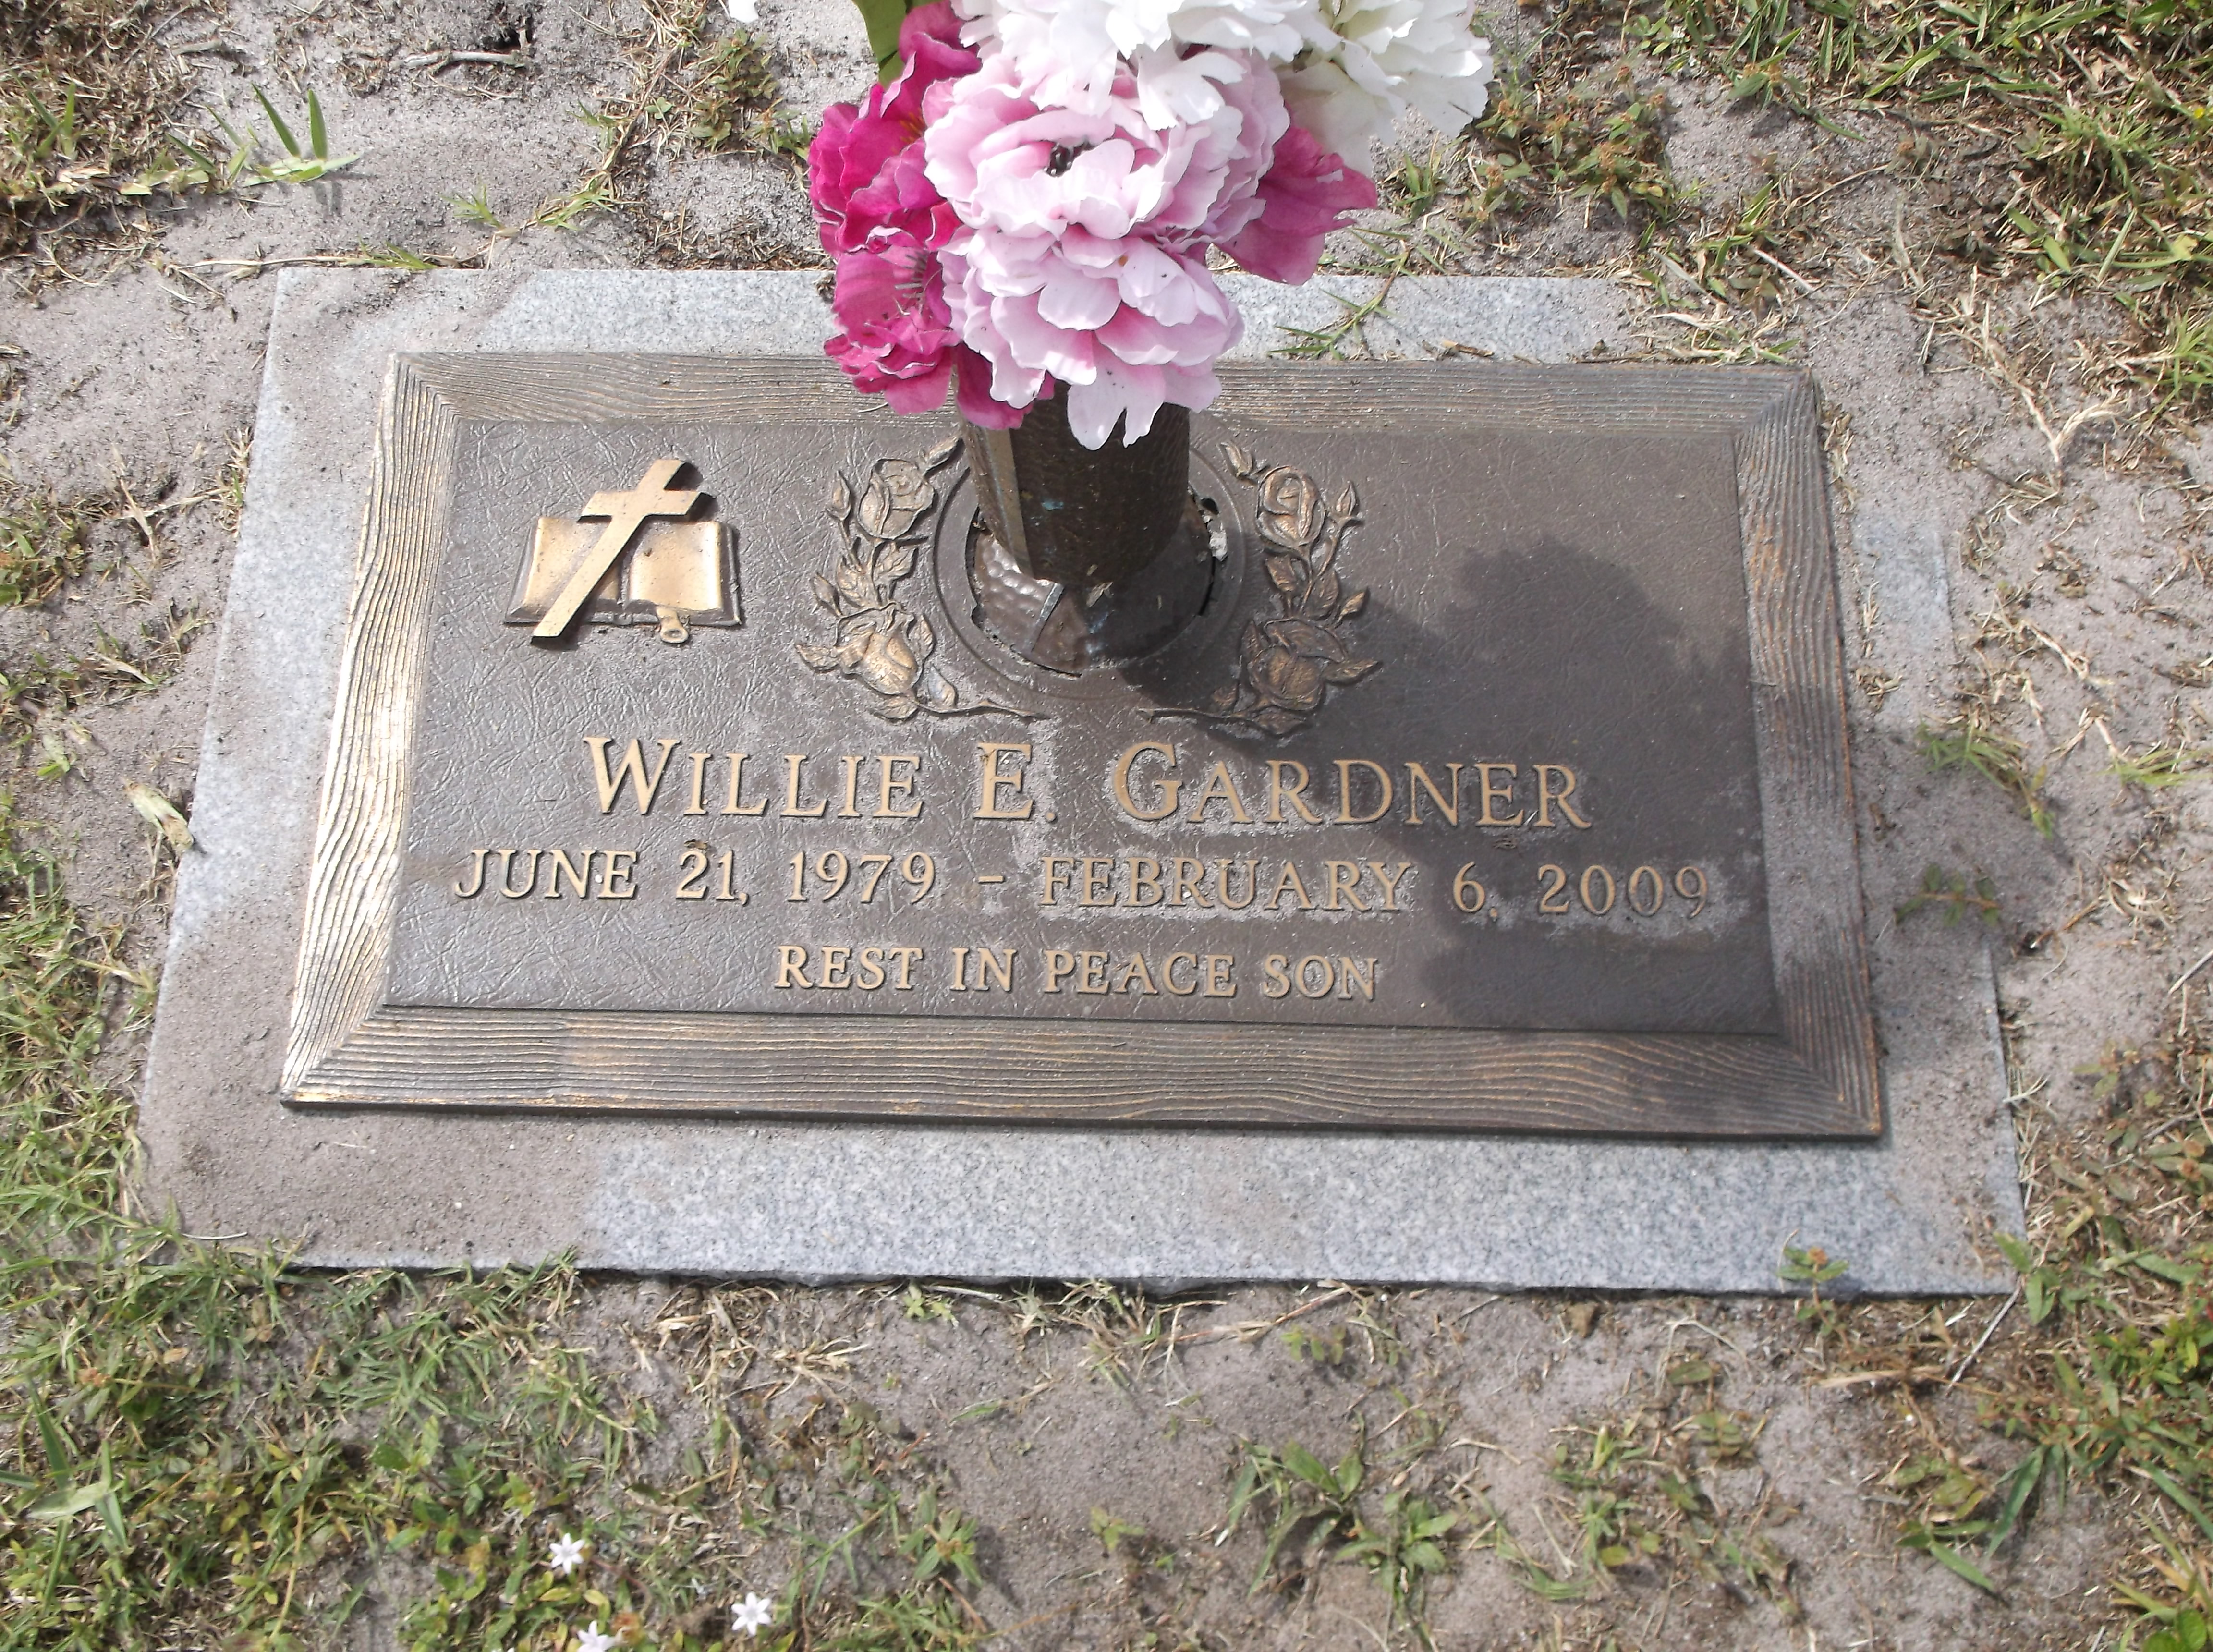 Willie E Gardner